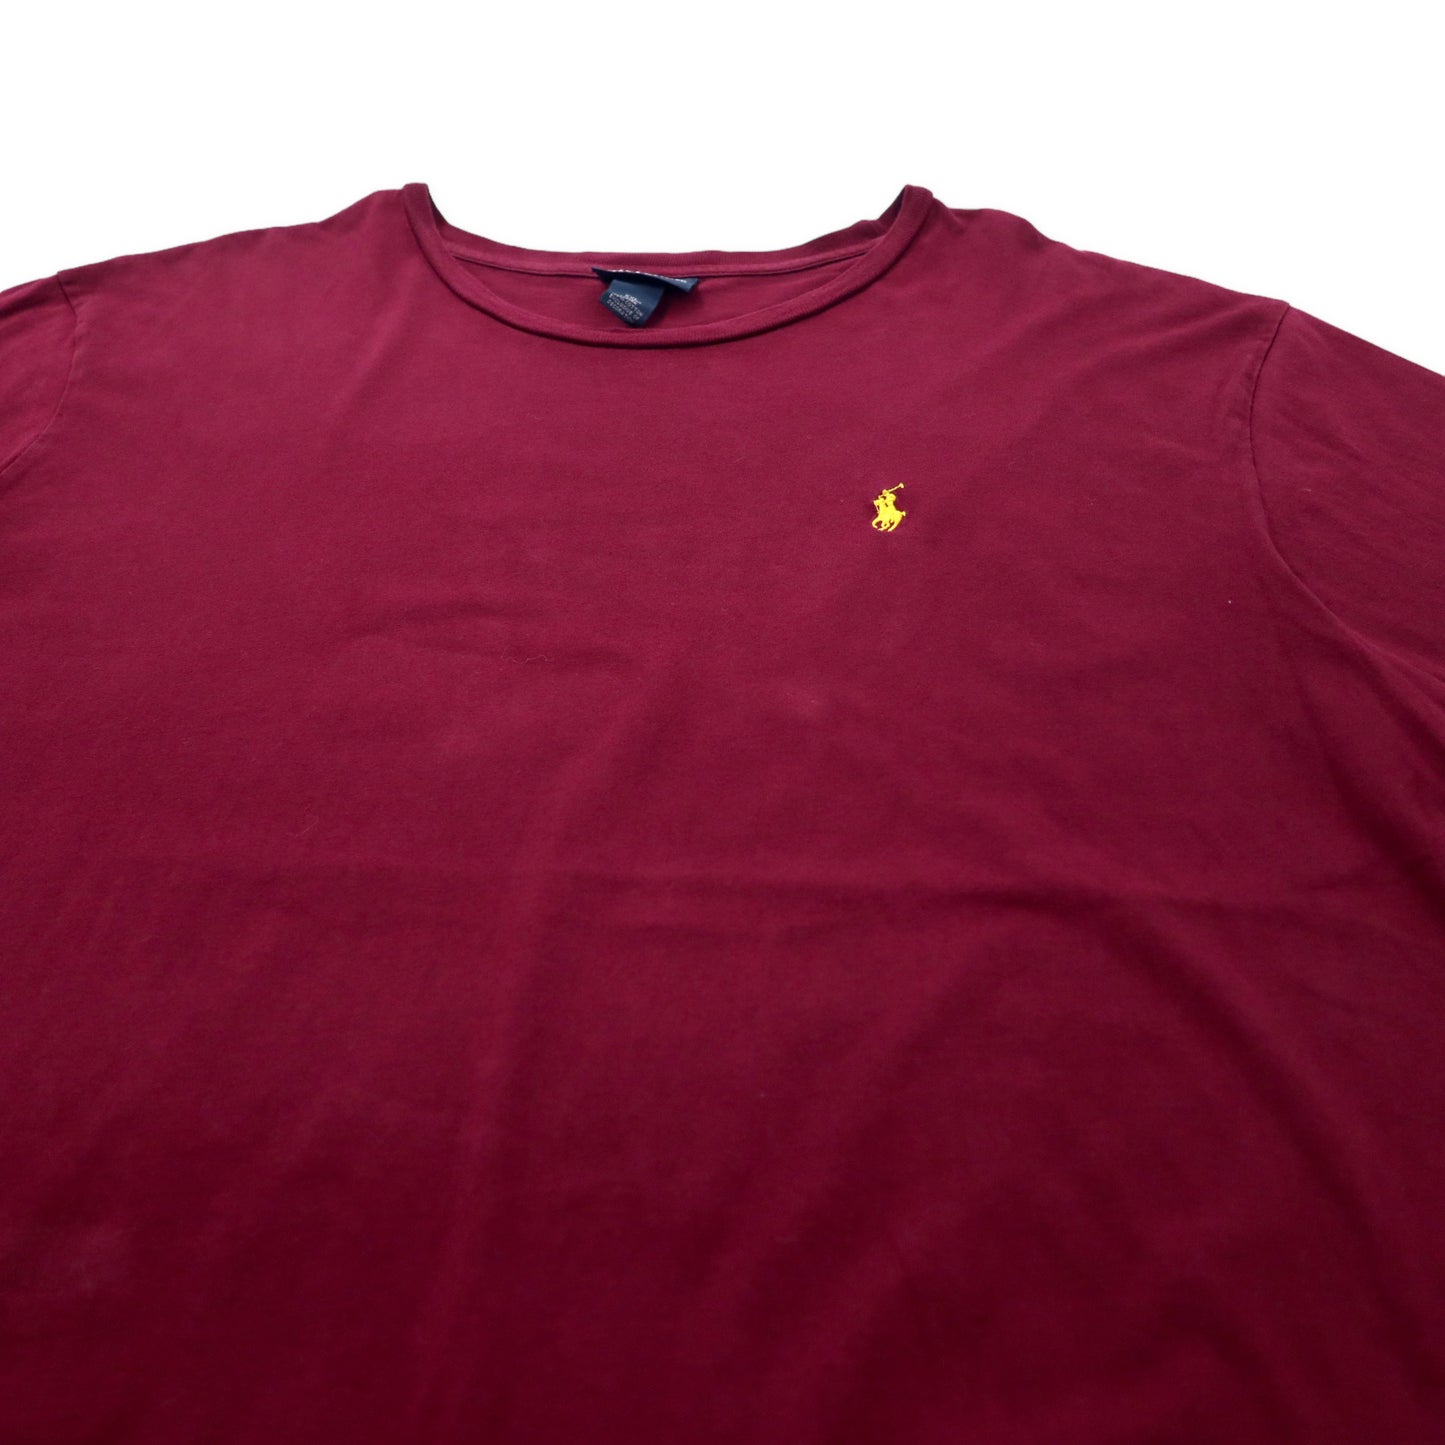 Polo by Ralph Lauren ワンポイントロゴTシャツ XXL パープル コットン ビッグサイズ